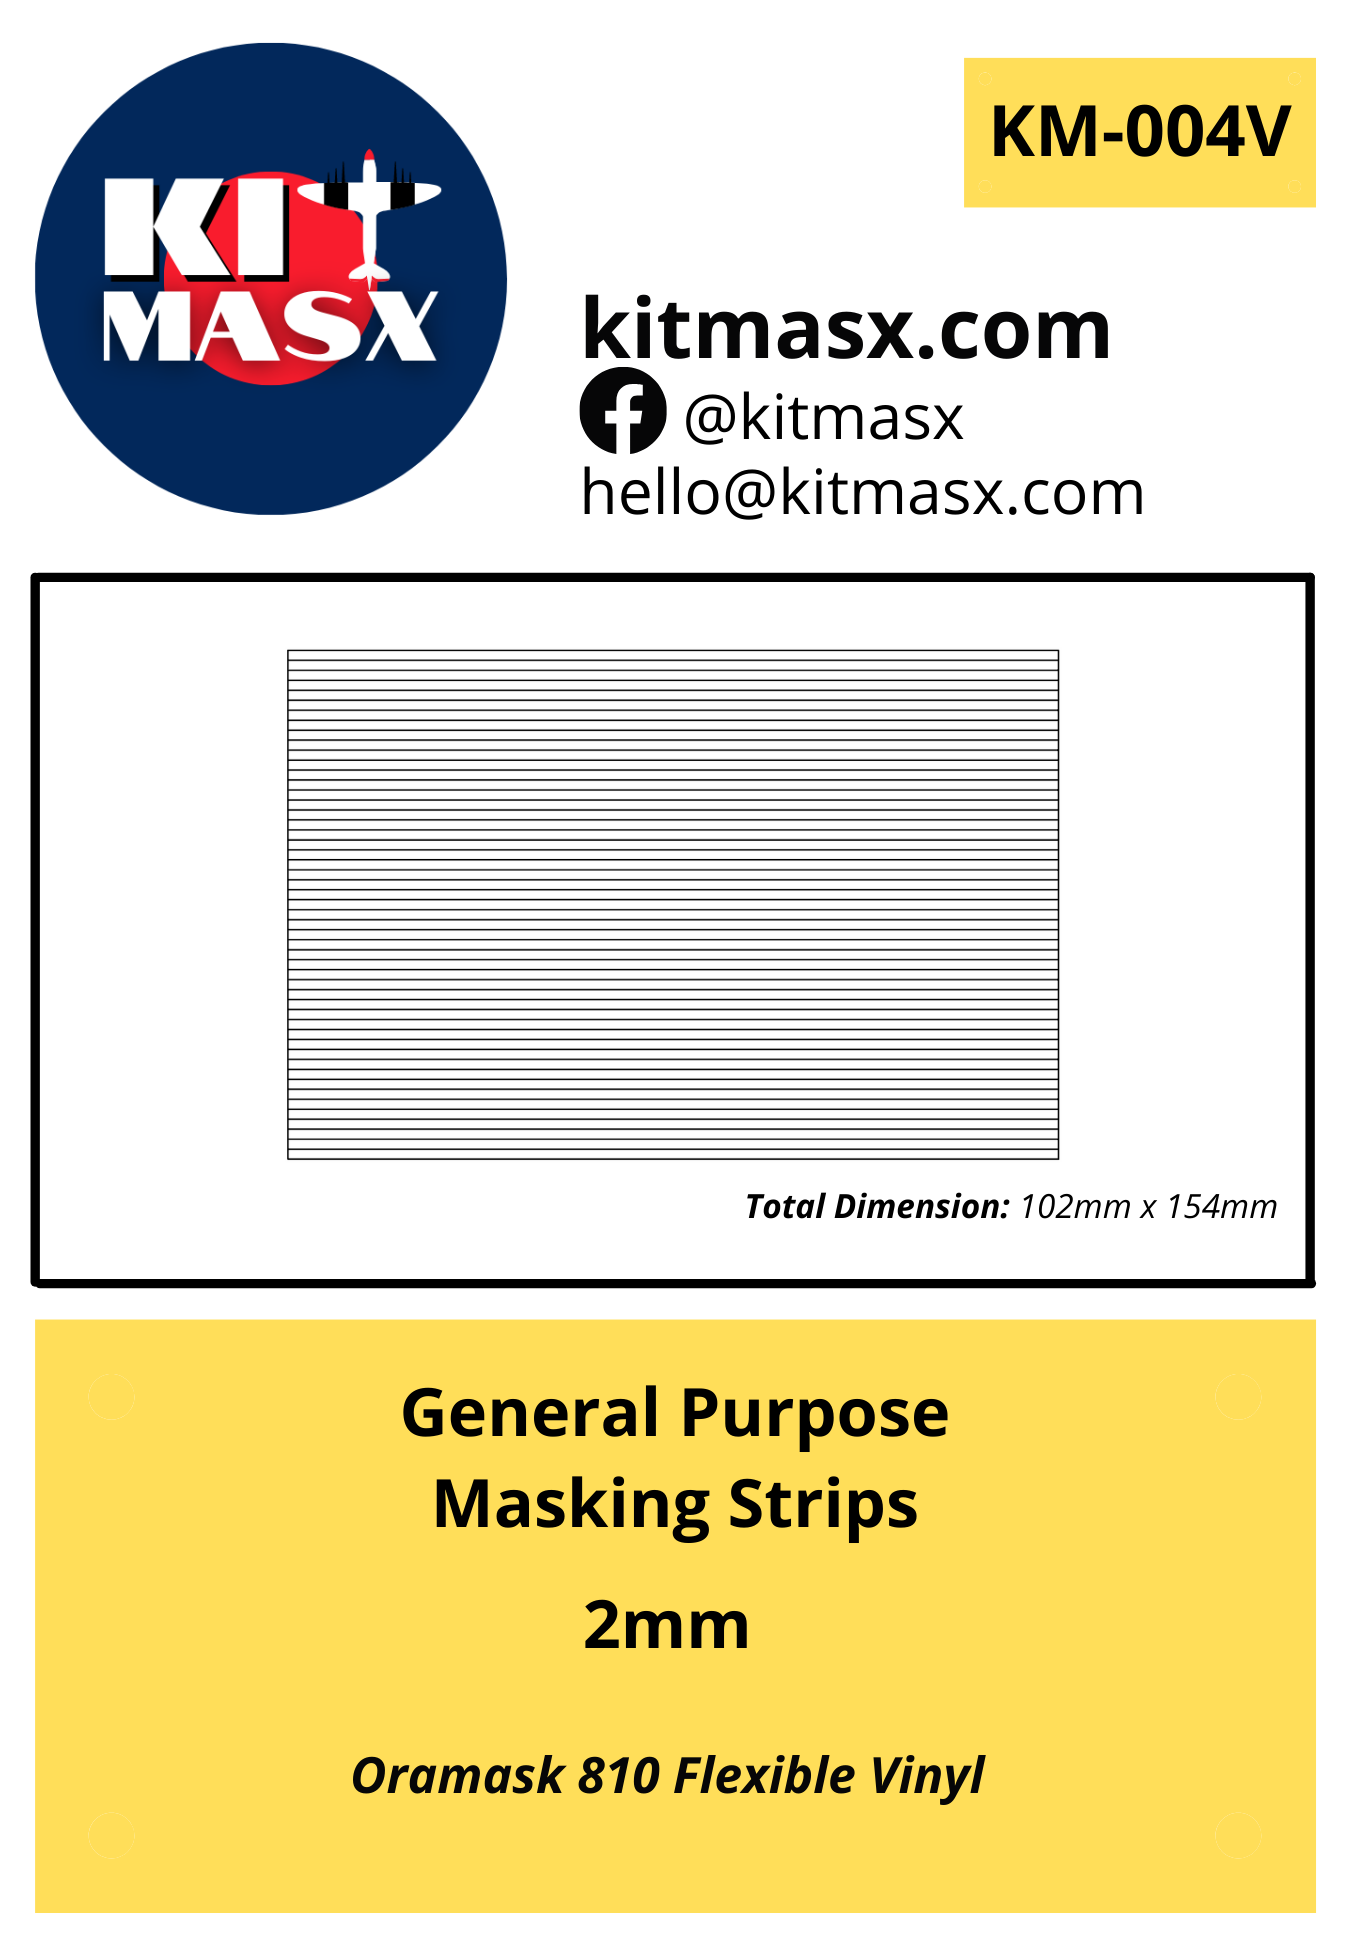 General Purpose Masking Strips 2mm